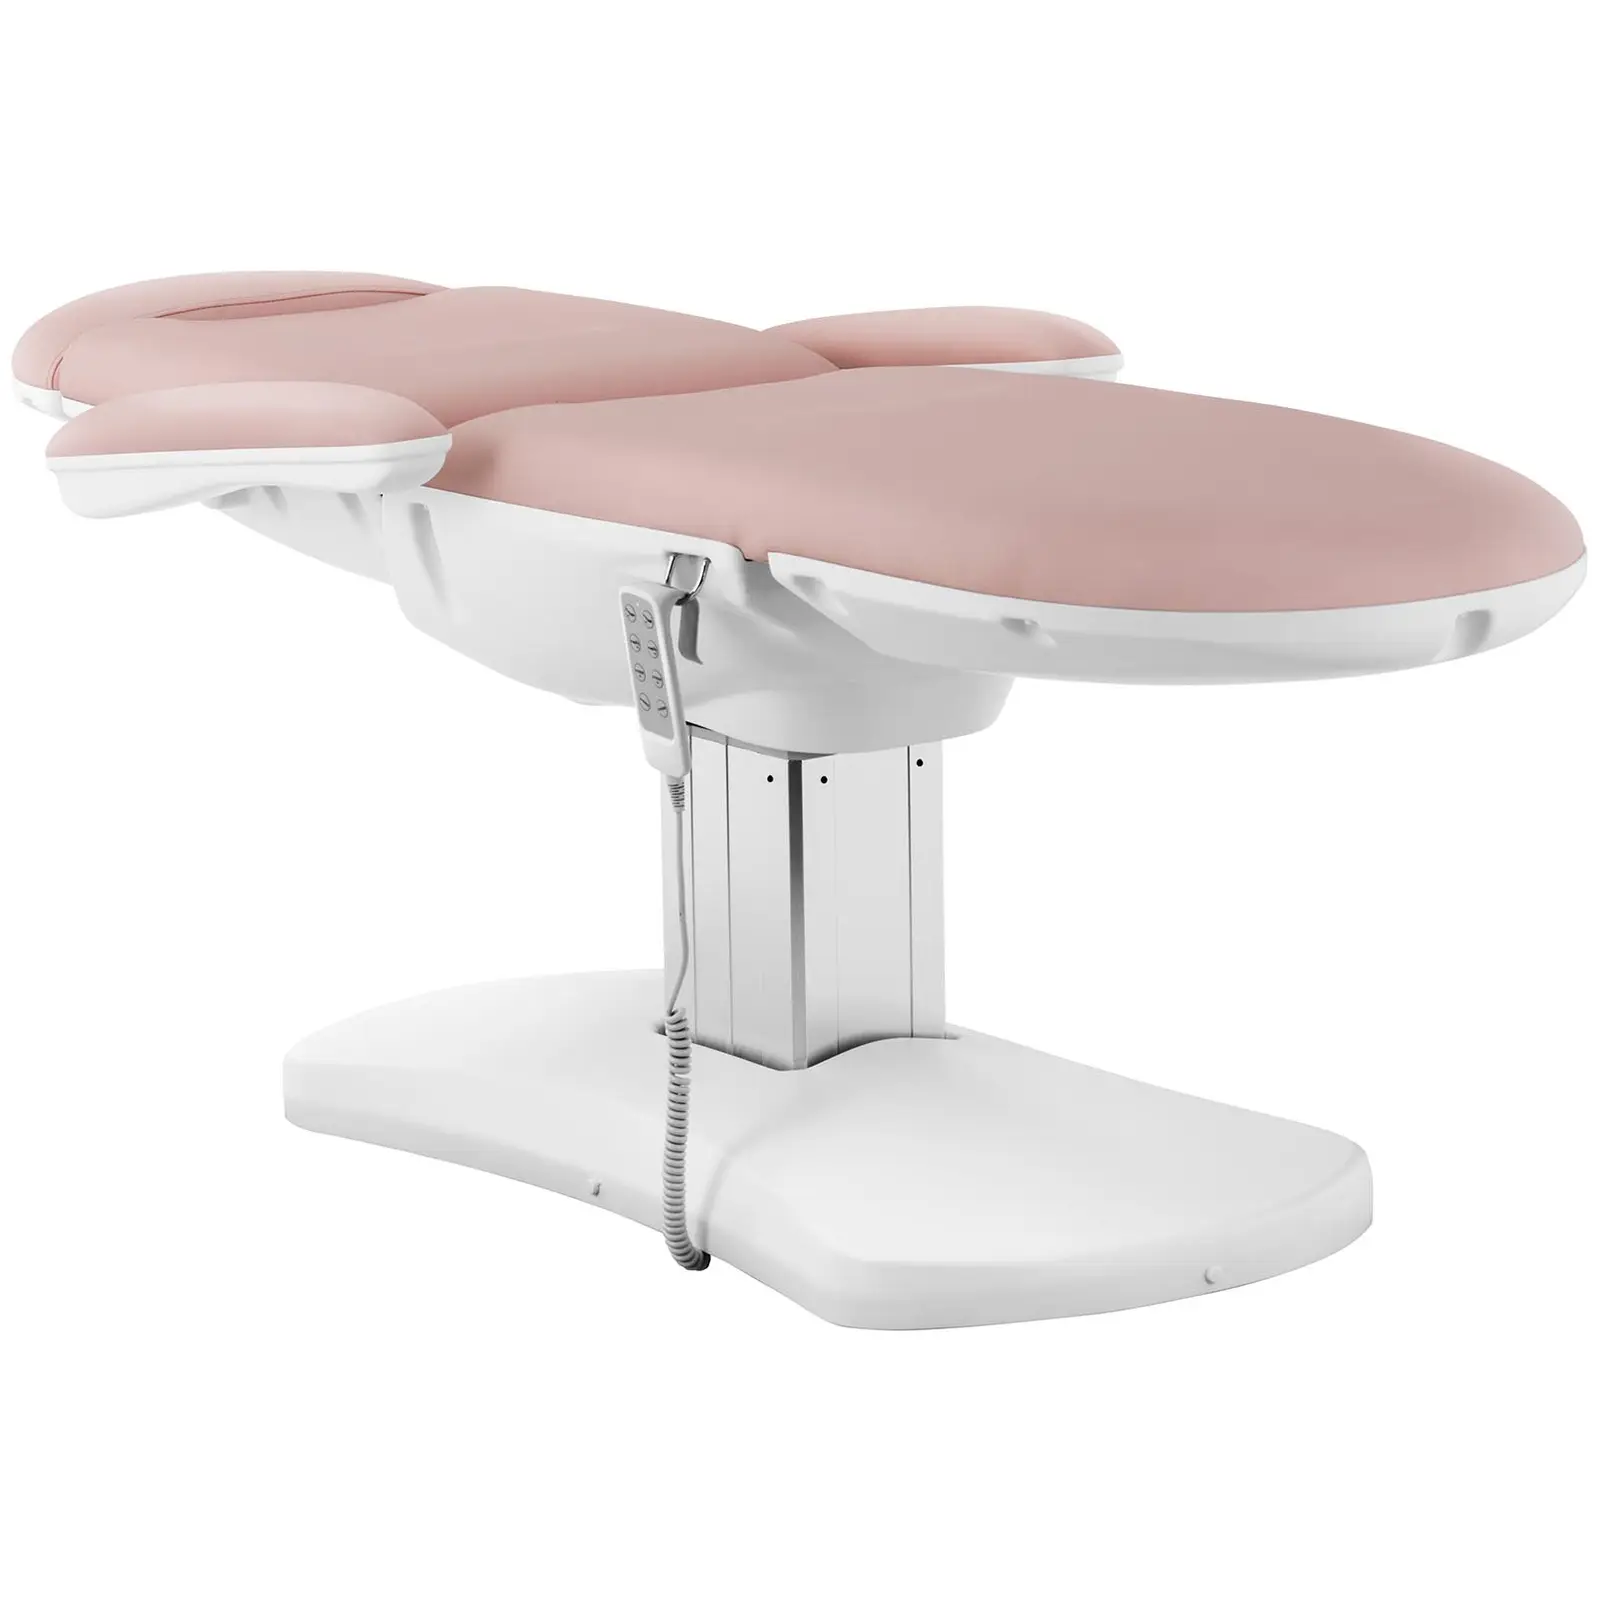 Tweedehands Behandelstoel - 350 W - 150 kg - Roze, Wit